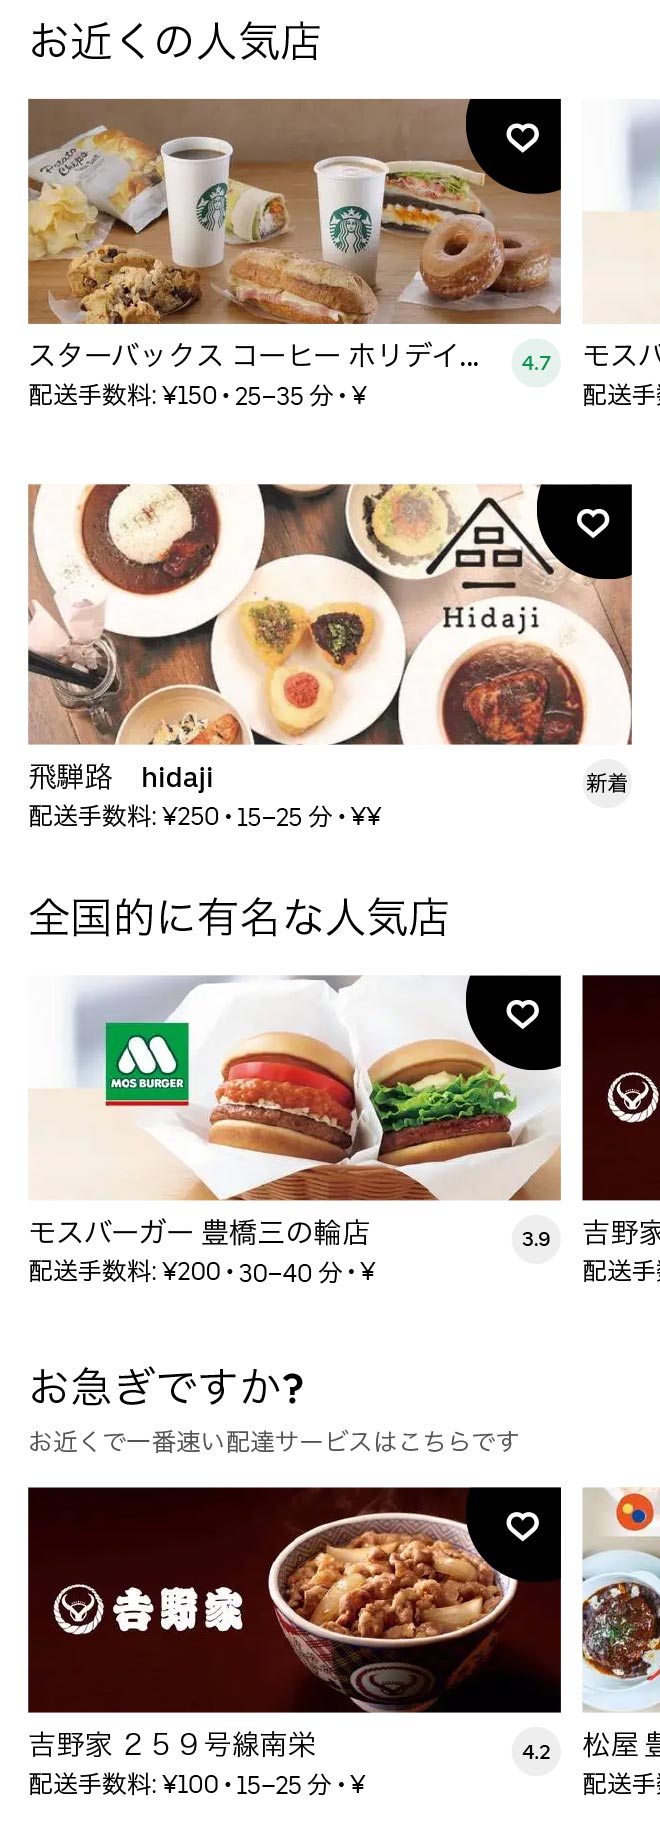 Aichi daigaku menu 2012 01